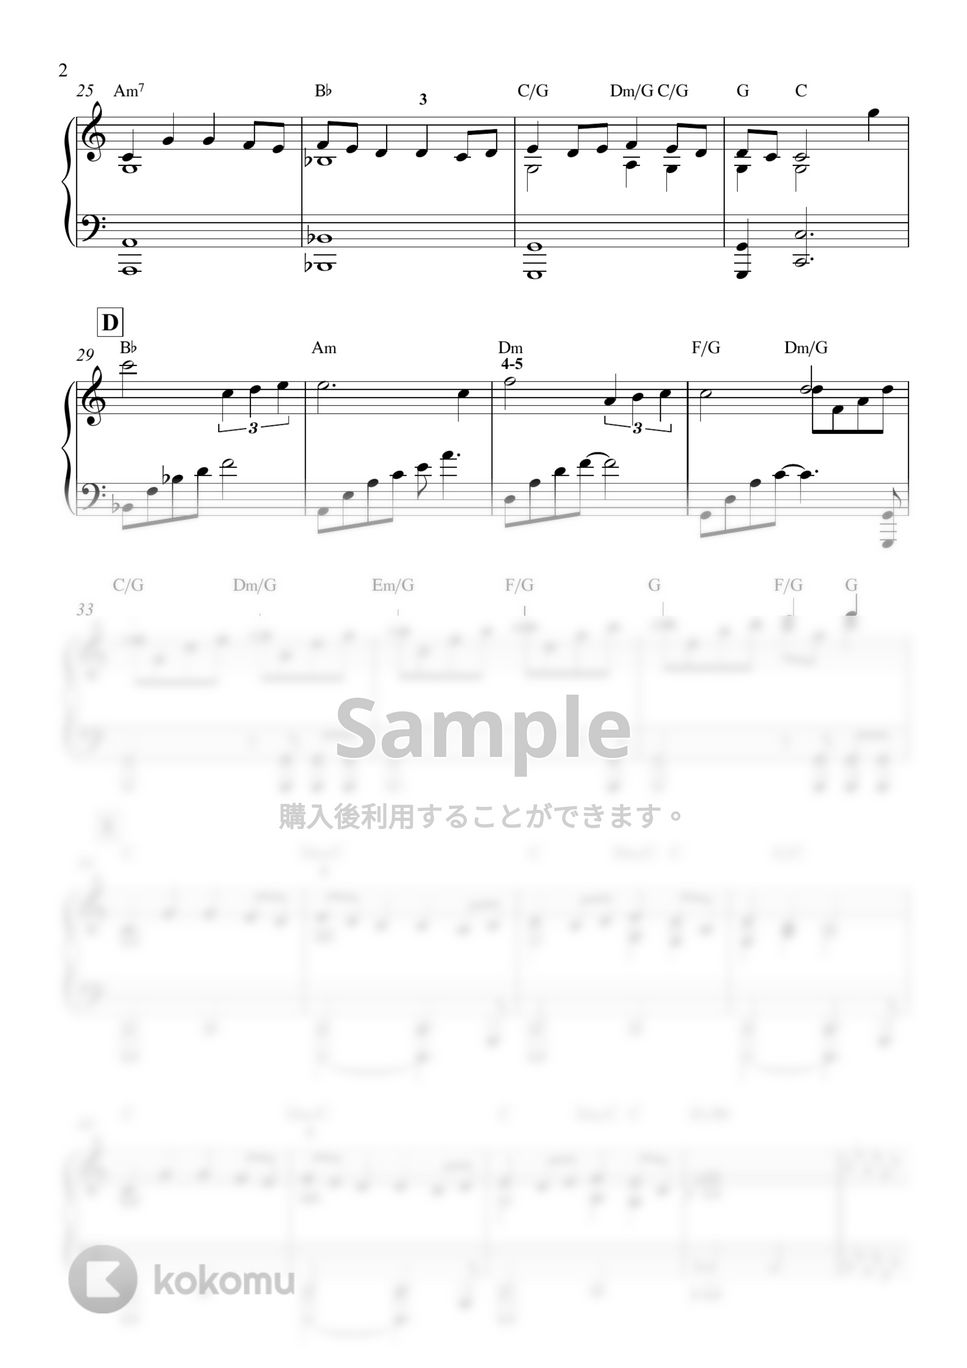 トップガン - Top Gun Anthem by ARAPIANO